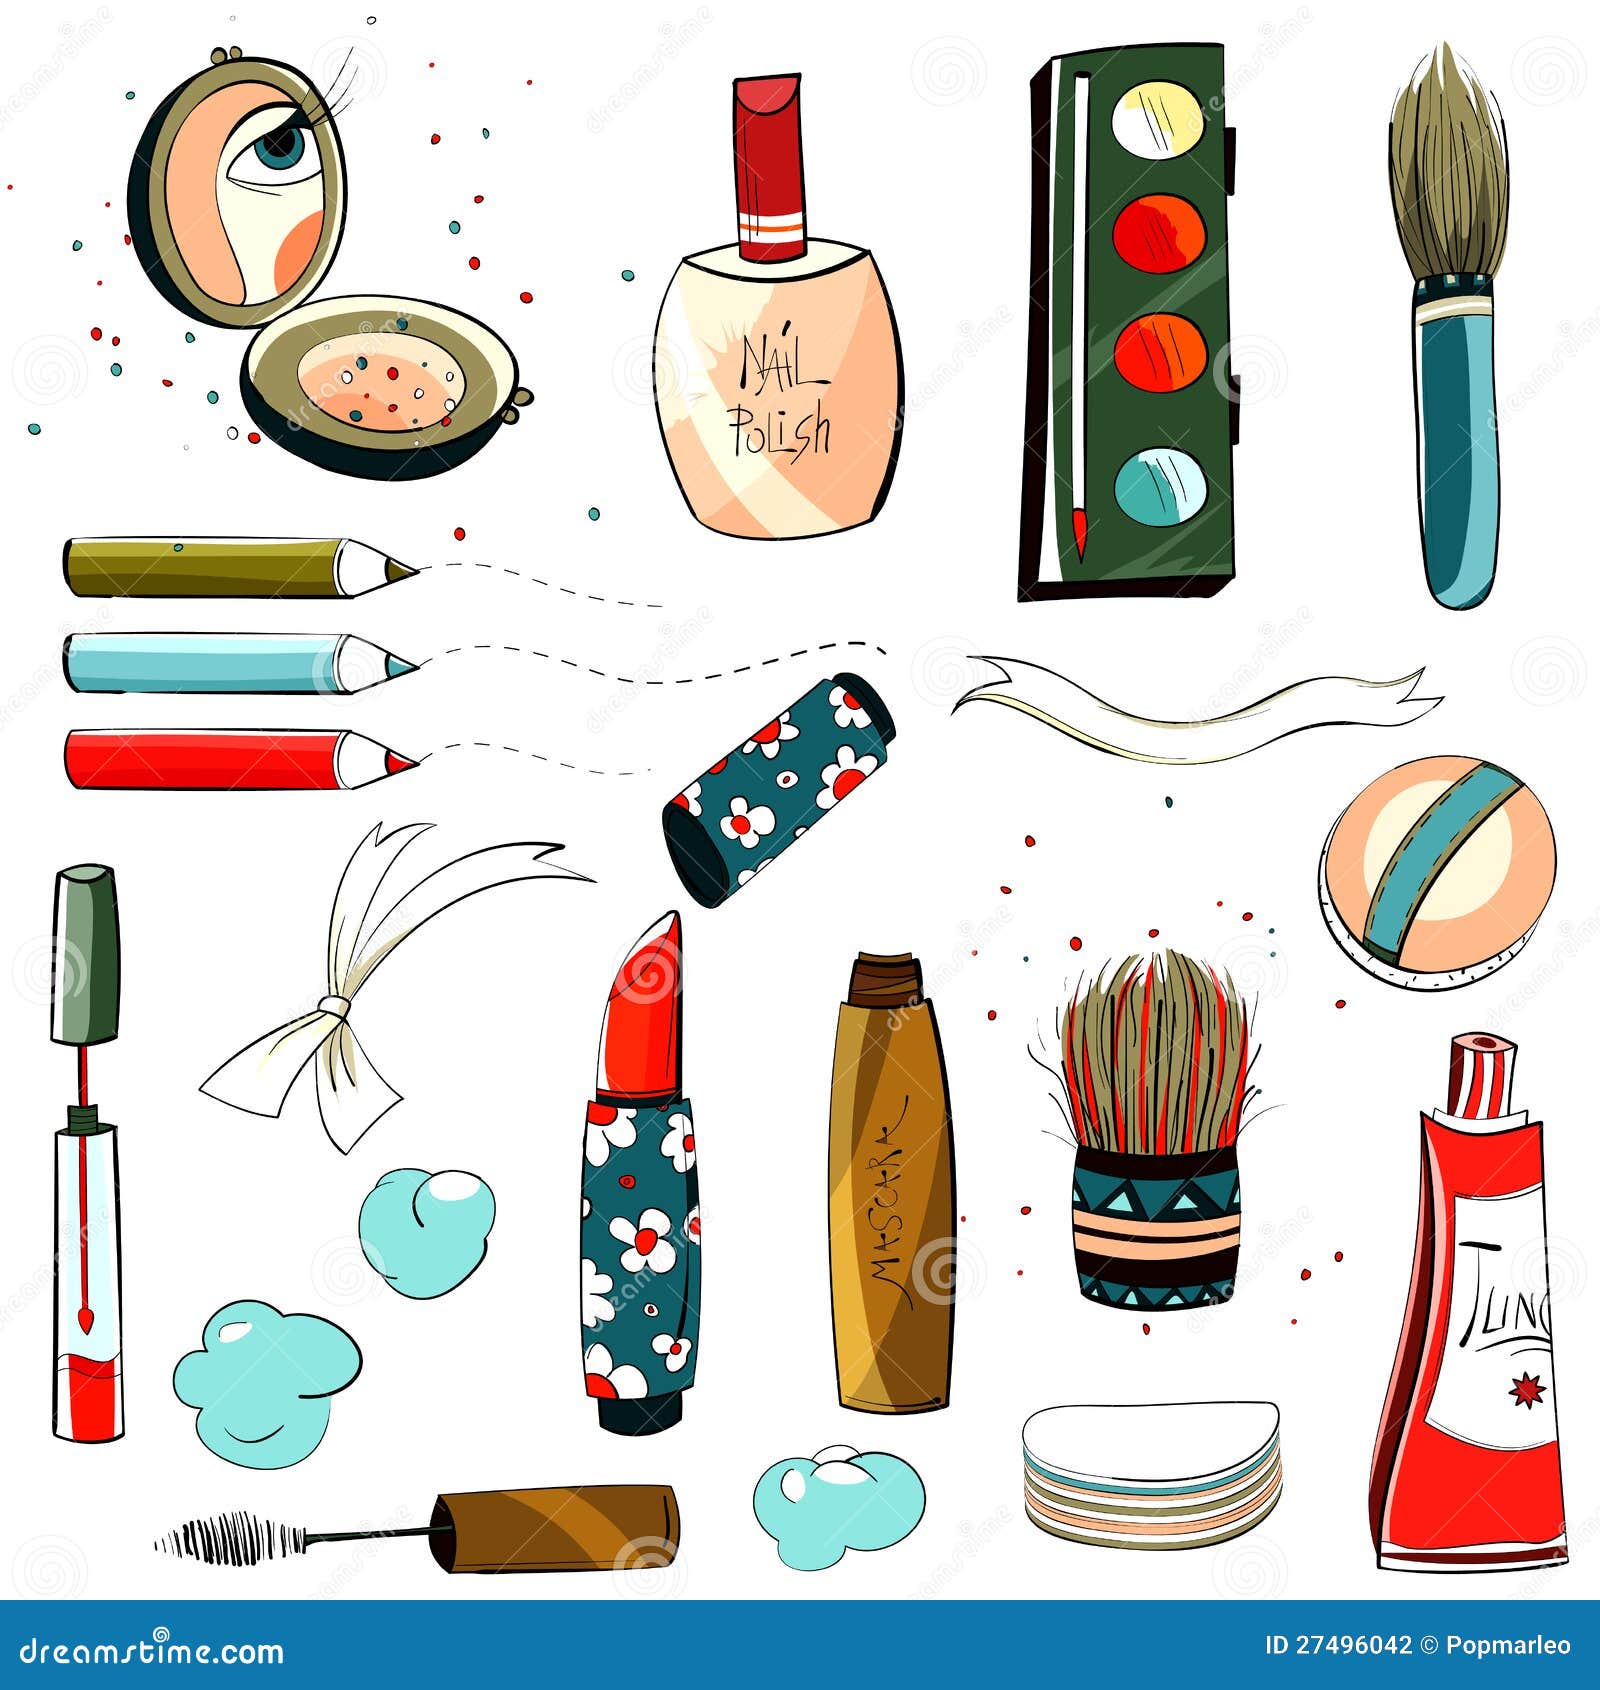 Easy Makeup kit Drawing |How To Draw And Paint Makeup Set For Kids And  Toddlers |#makeupkit | Makeup kit, Makeup set, Drawings